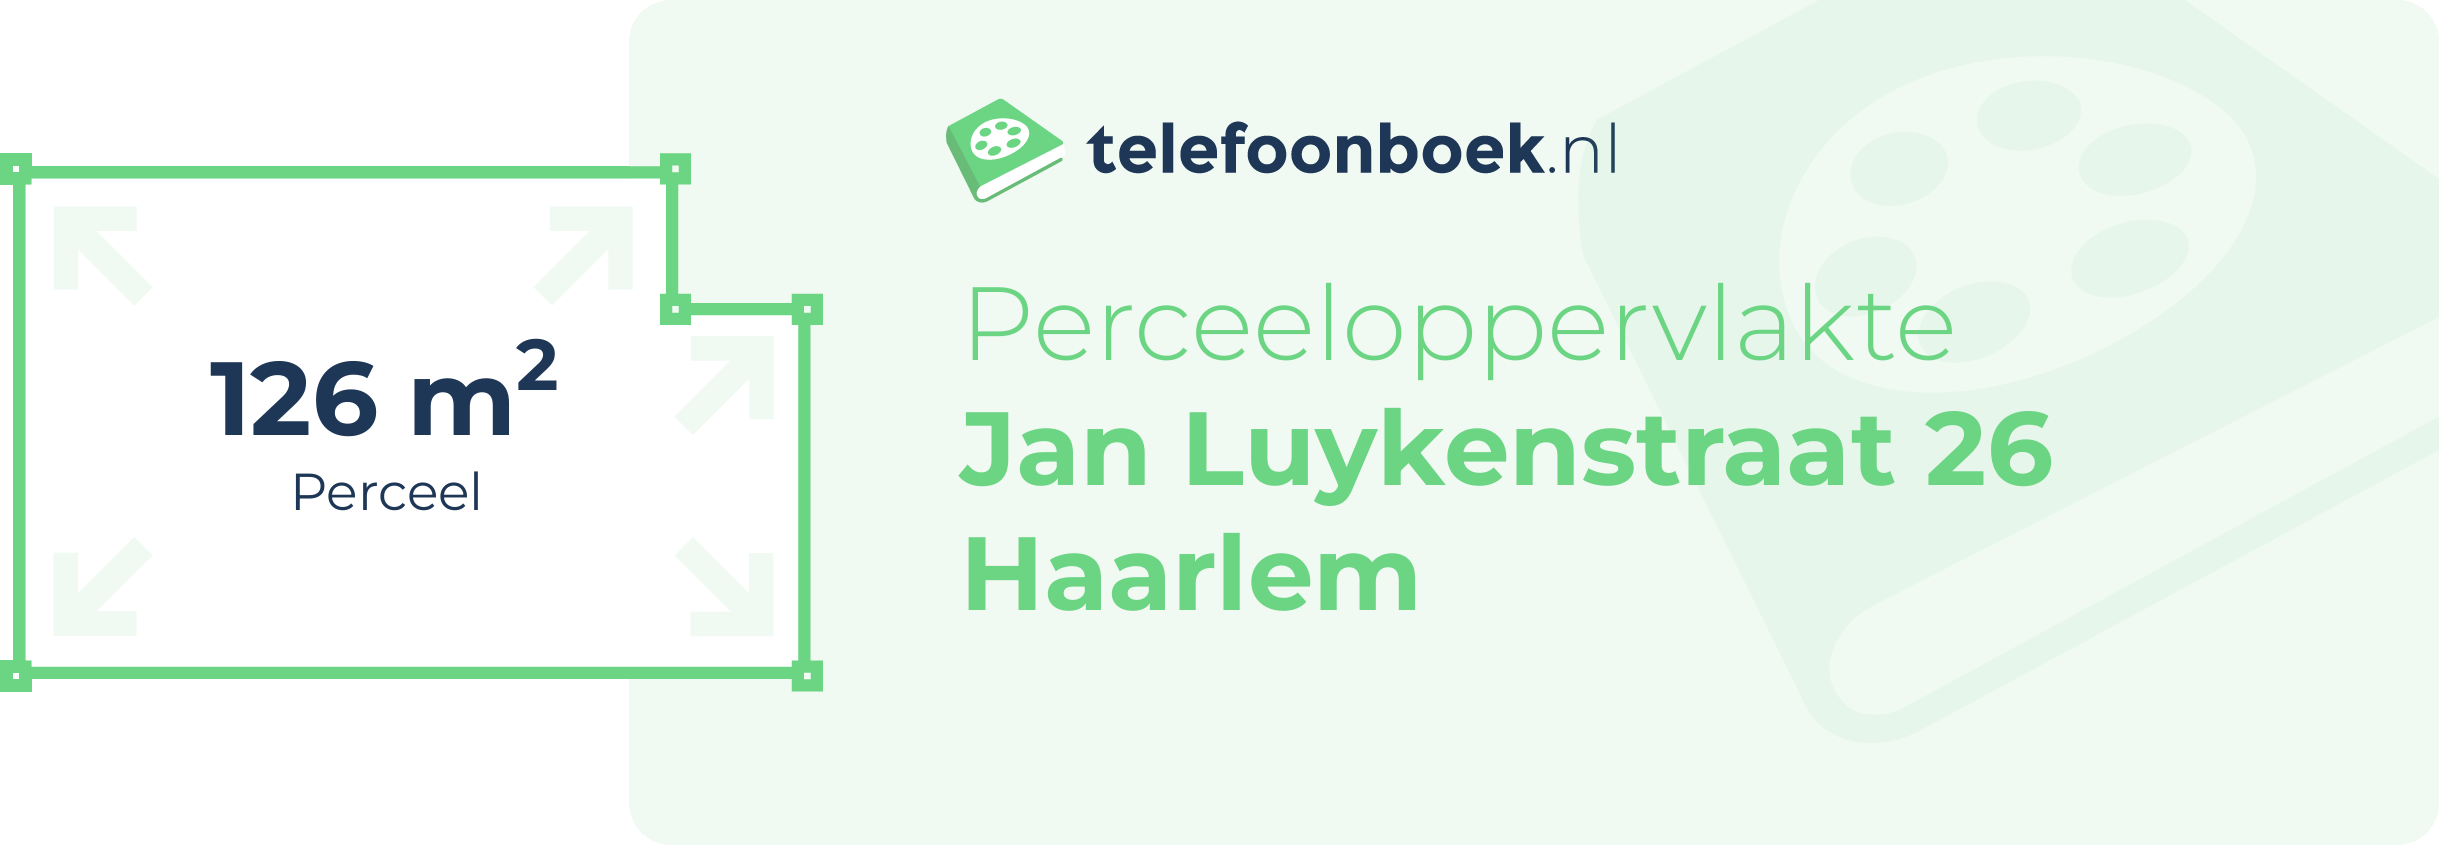 Perceeloppervlakte Jan Luykenstraat 26 Haarlem